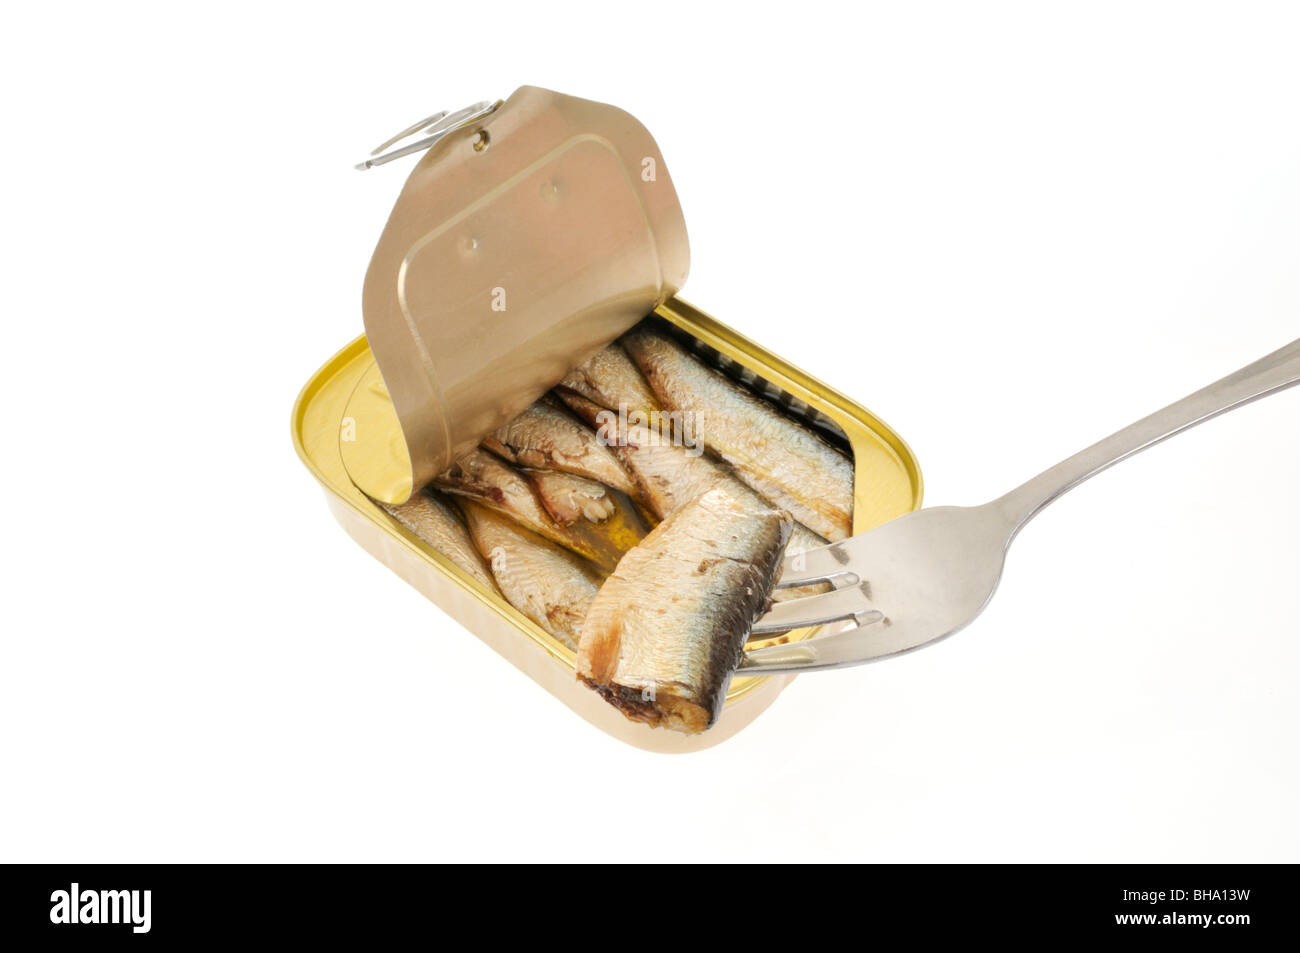 Un aprire la linguetta da tirare lo stagno di sardine confezionate in olio su sfondo bianco con una sardina sulla forcella. Foto Stock